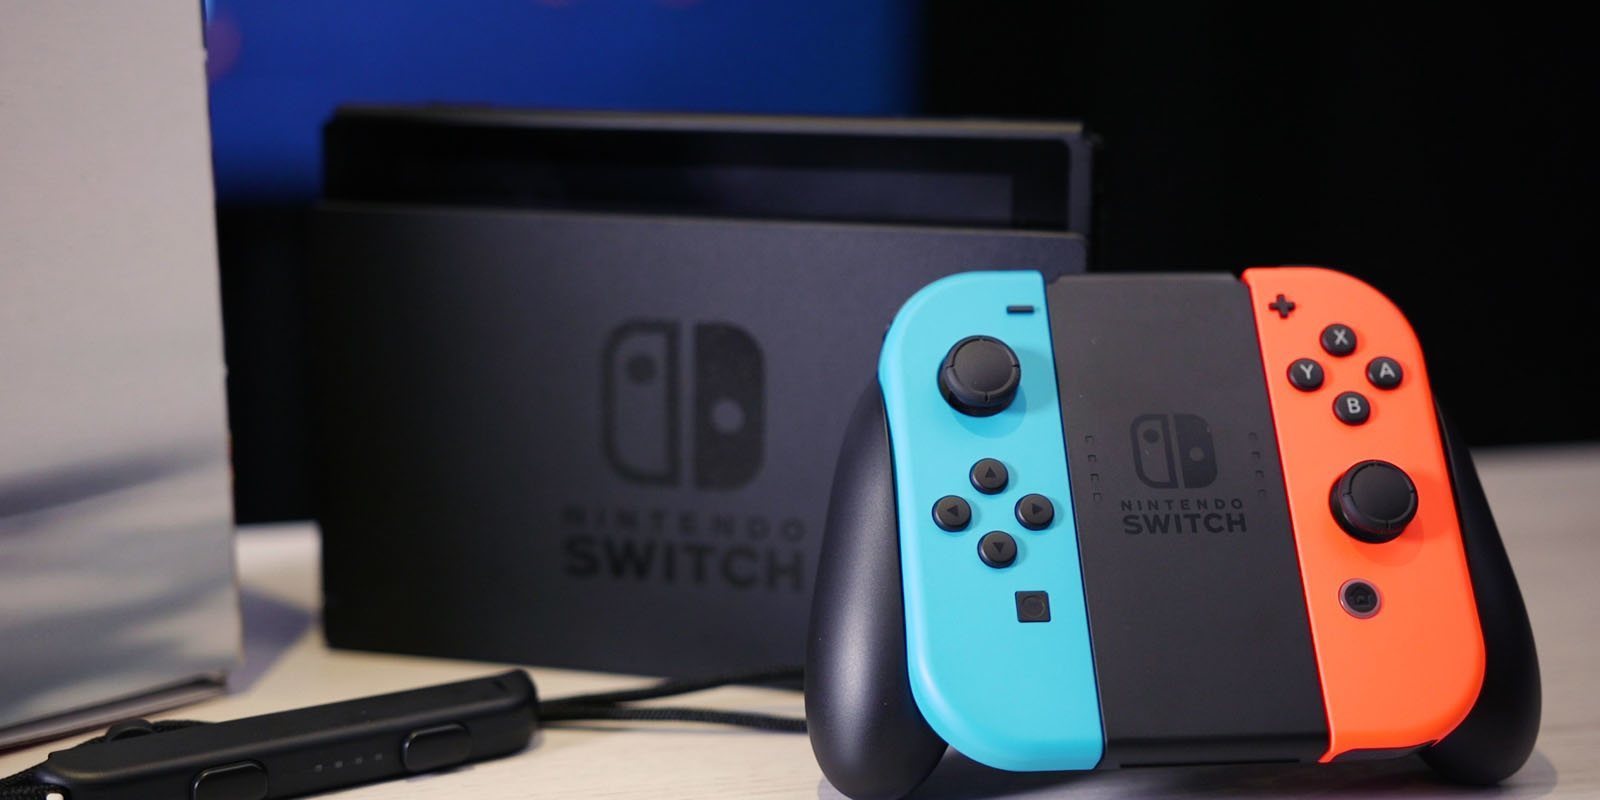 Nintendo Switch supera a PS4 en ventas durante 2018 en Japón